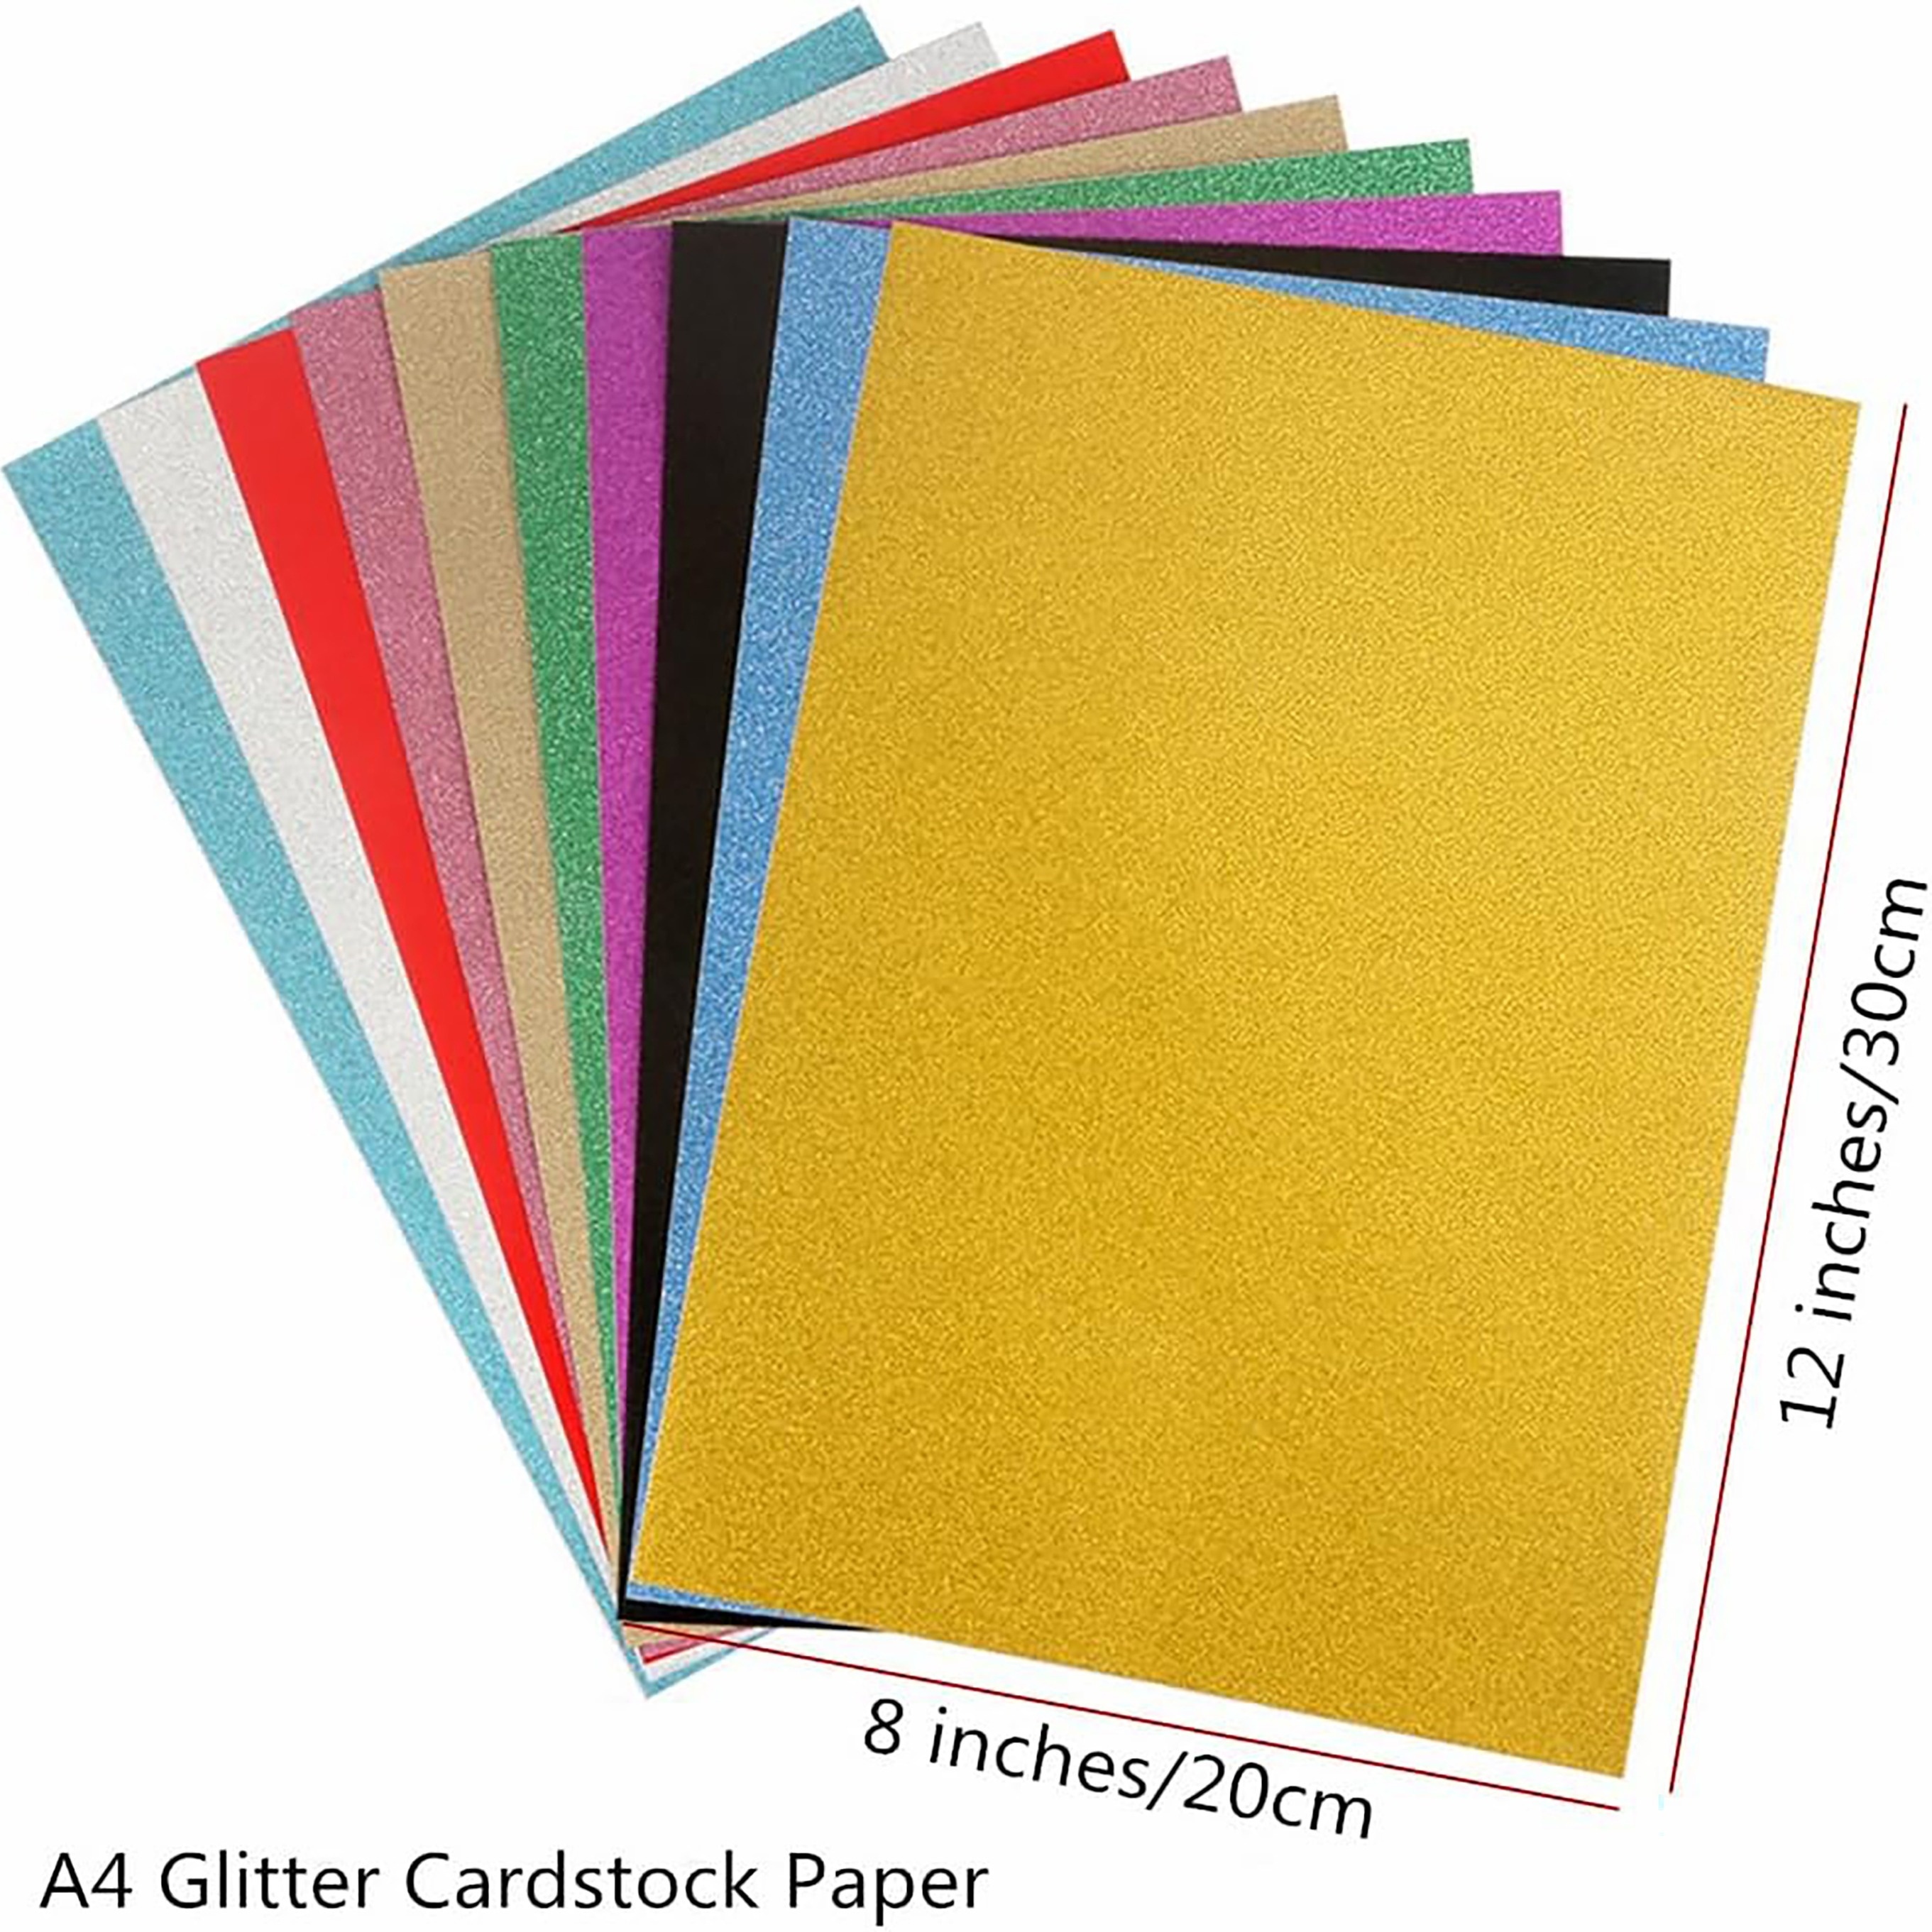 Glitter Cardstock Black 8 1/2 x 11 81# Cover Sheets Bulk Pack of 10